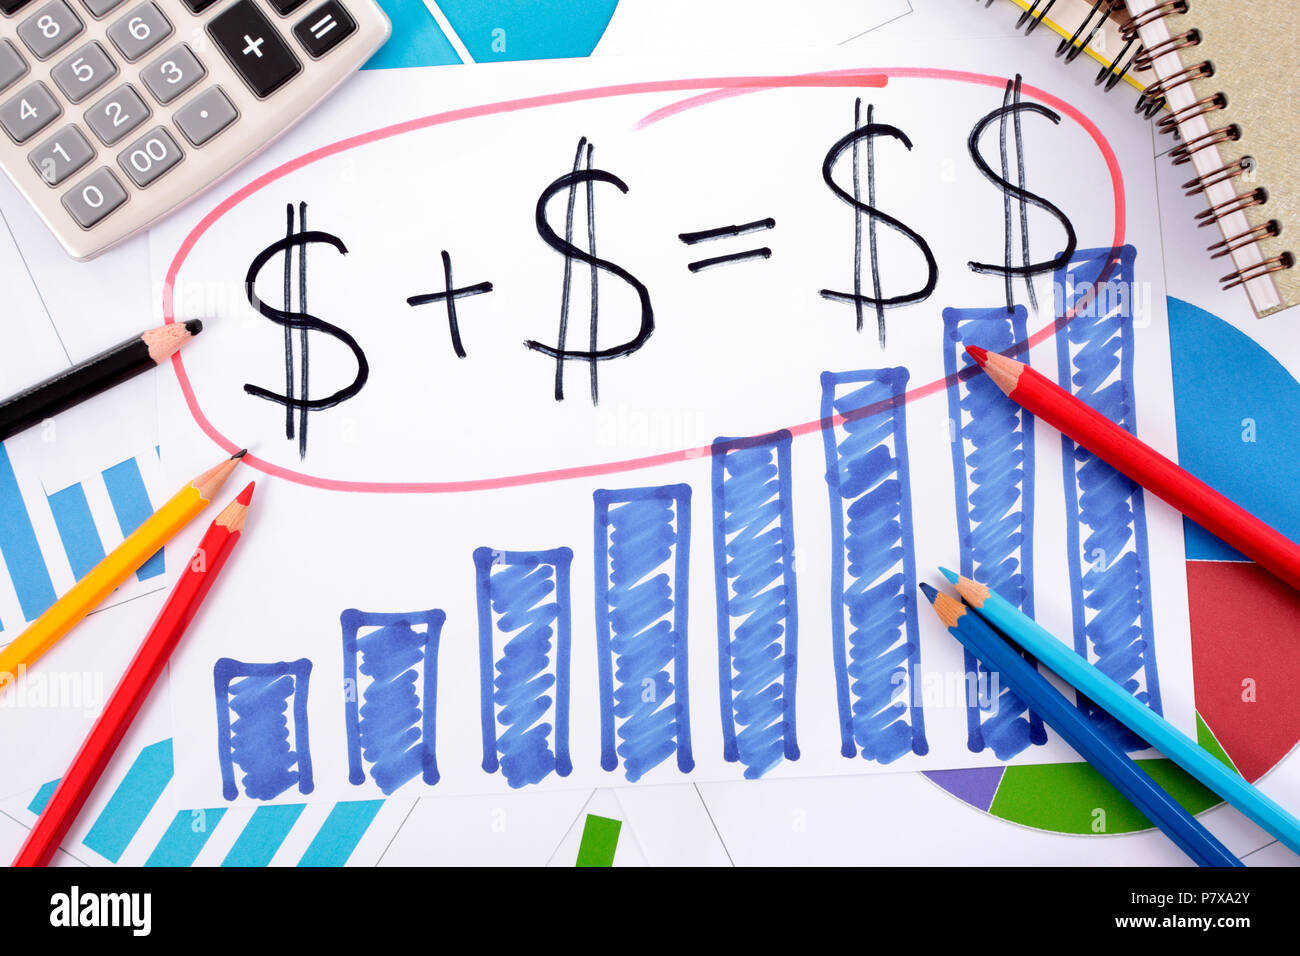 L'épargne simple ou formule de retraite écrit sur un graphique à barres à la main entouré de calculatrice, livres et crayons. Banque D'Images